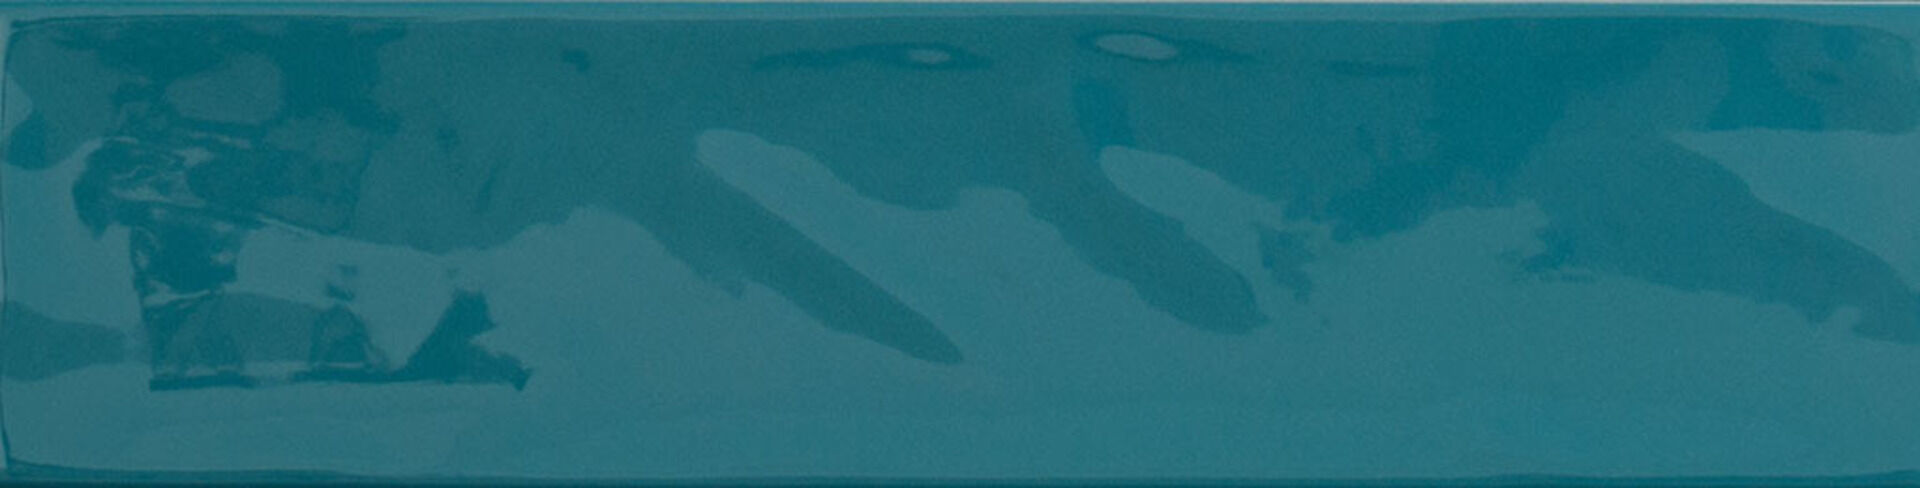 Керамическая плитка KANE MARINE 7,5*30 / коллекция KANE / производитель Cifre / страна Испания